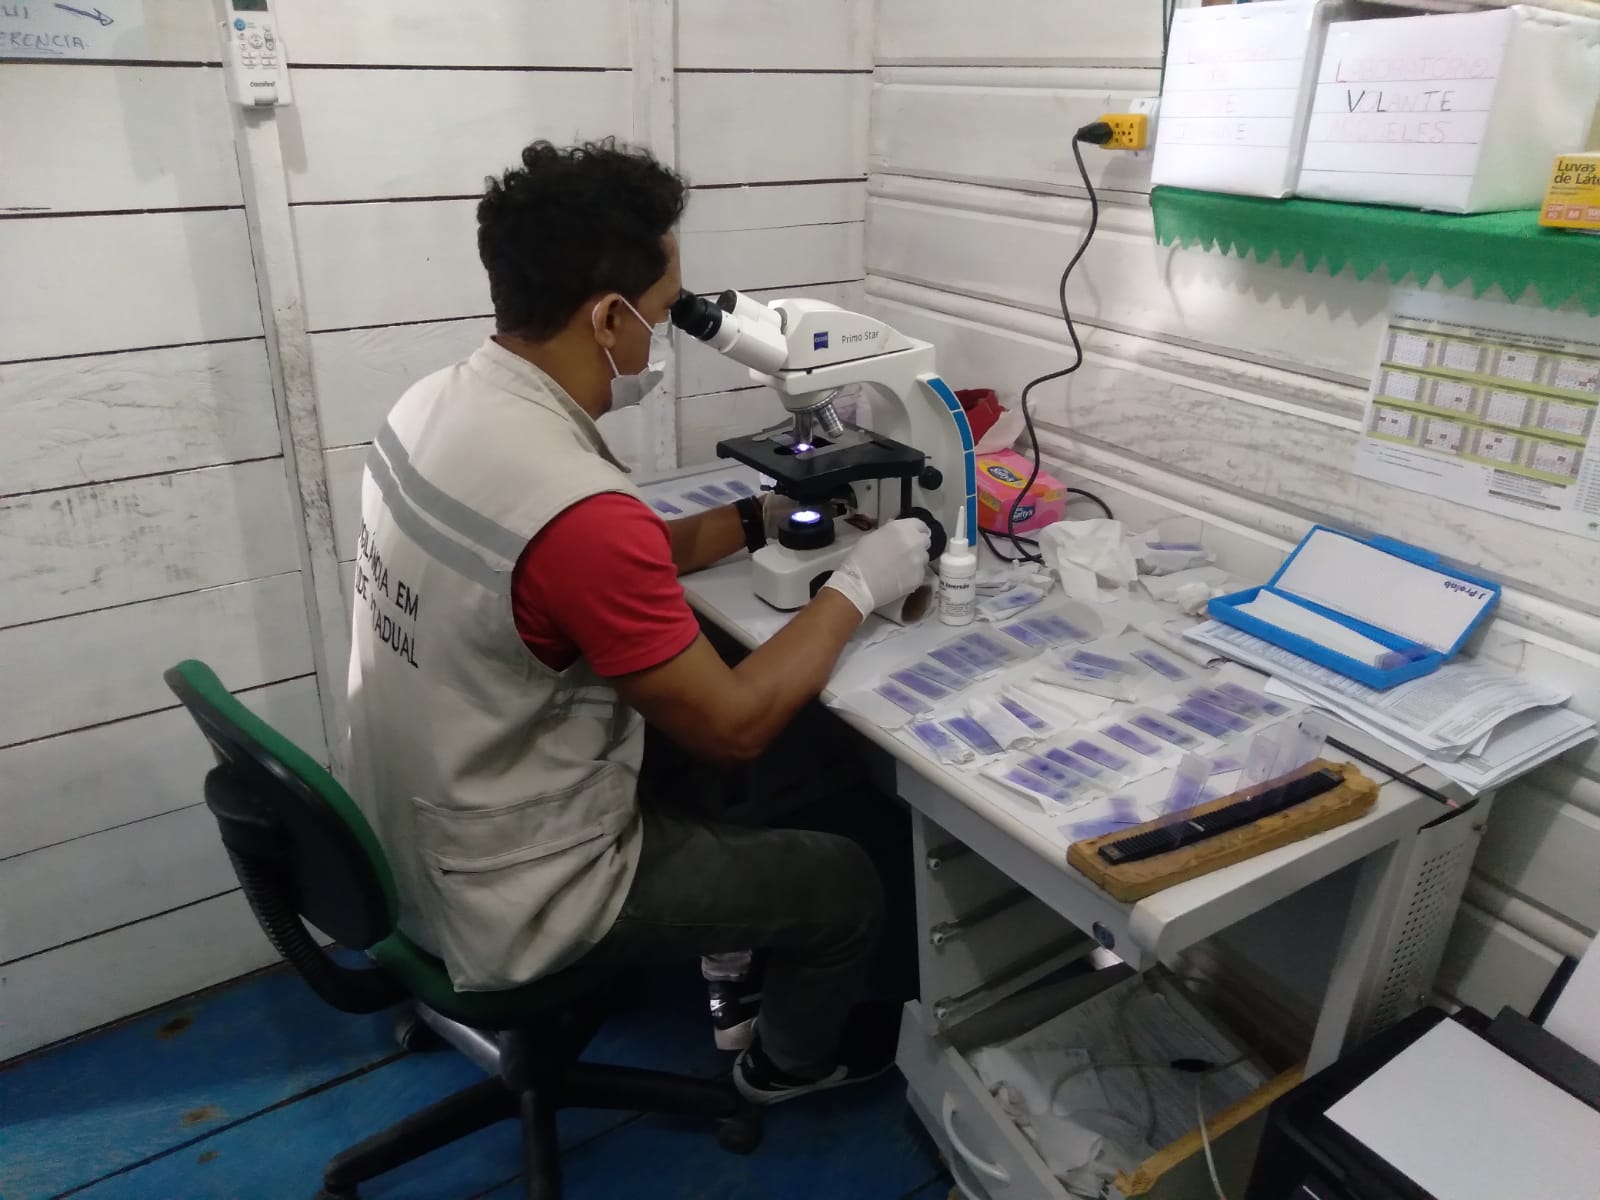 Amaturá registra 12 casos de doença de Chagas